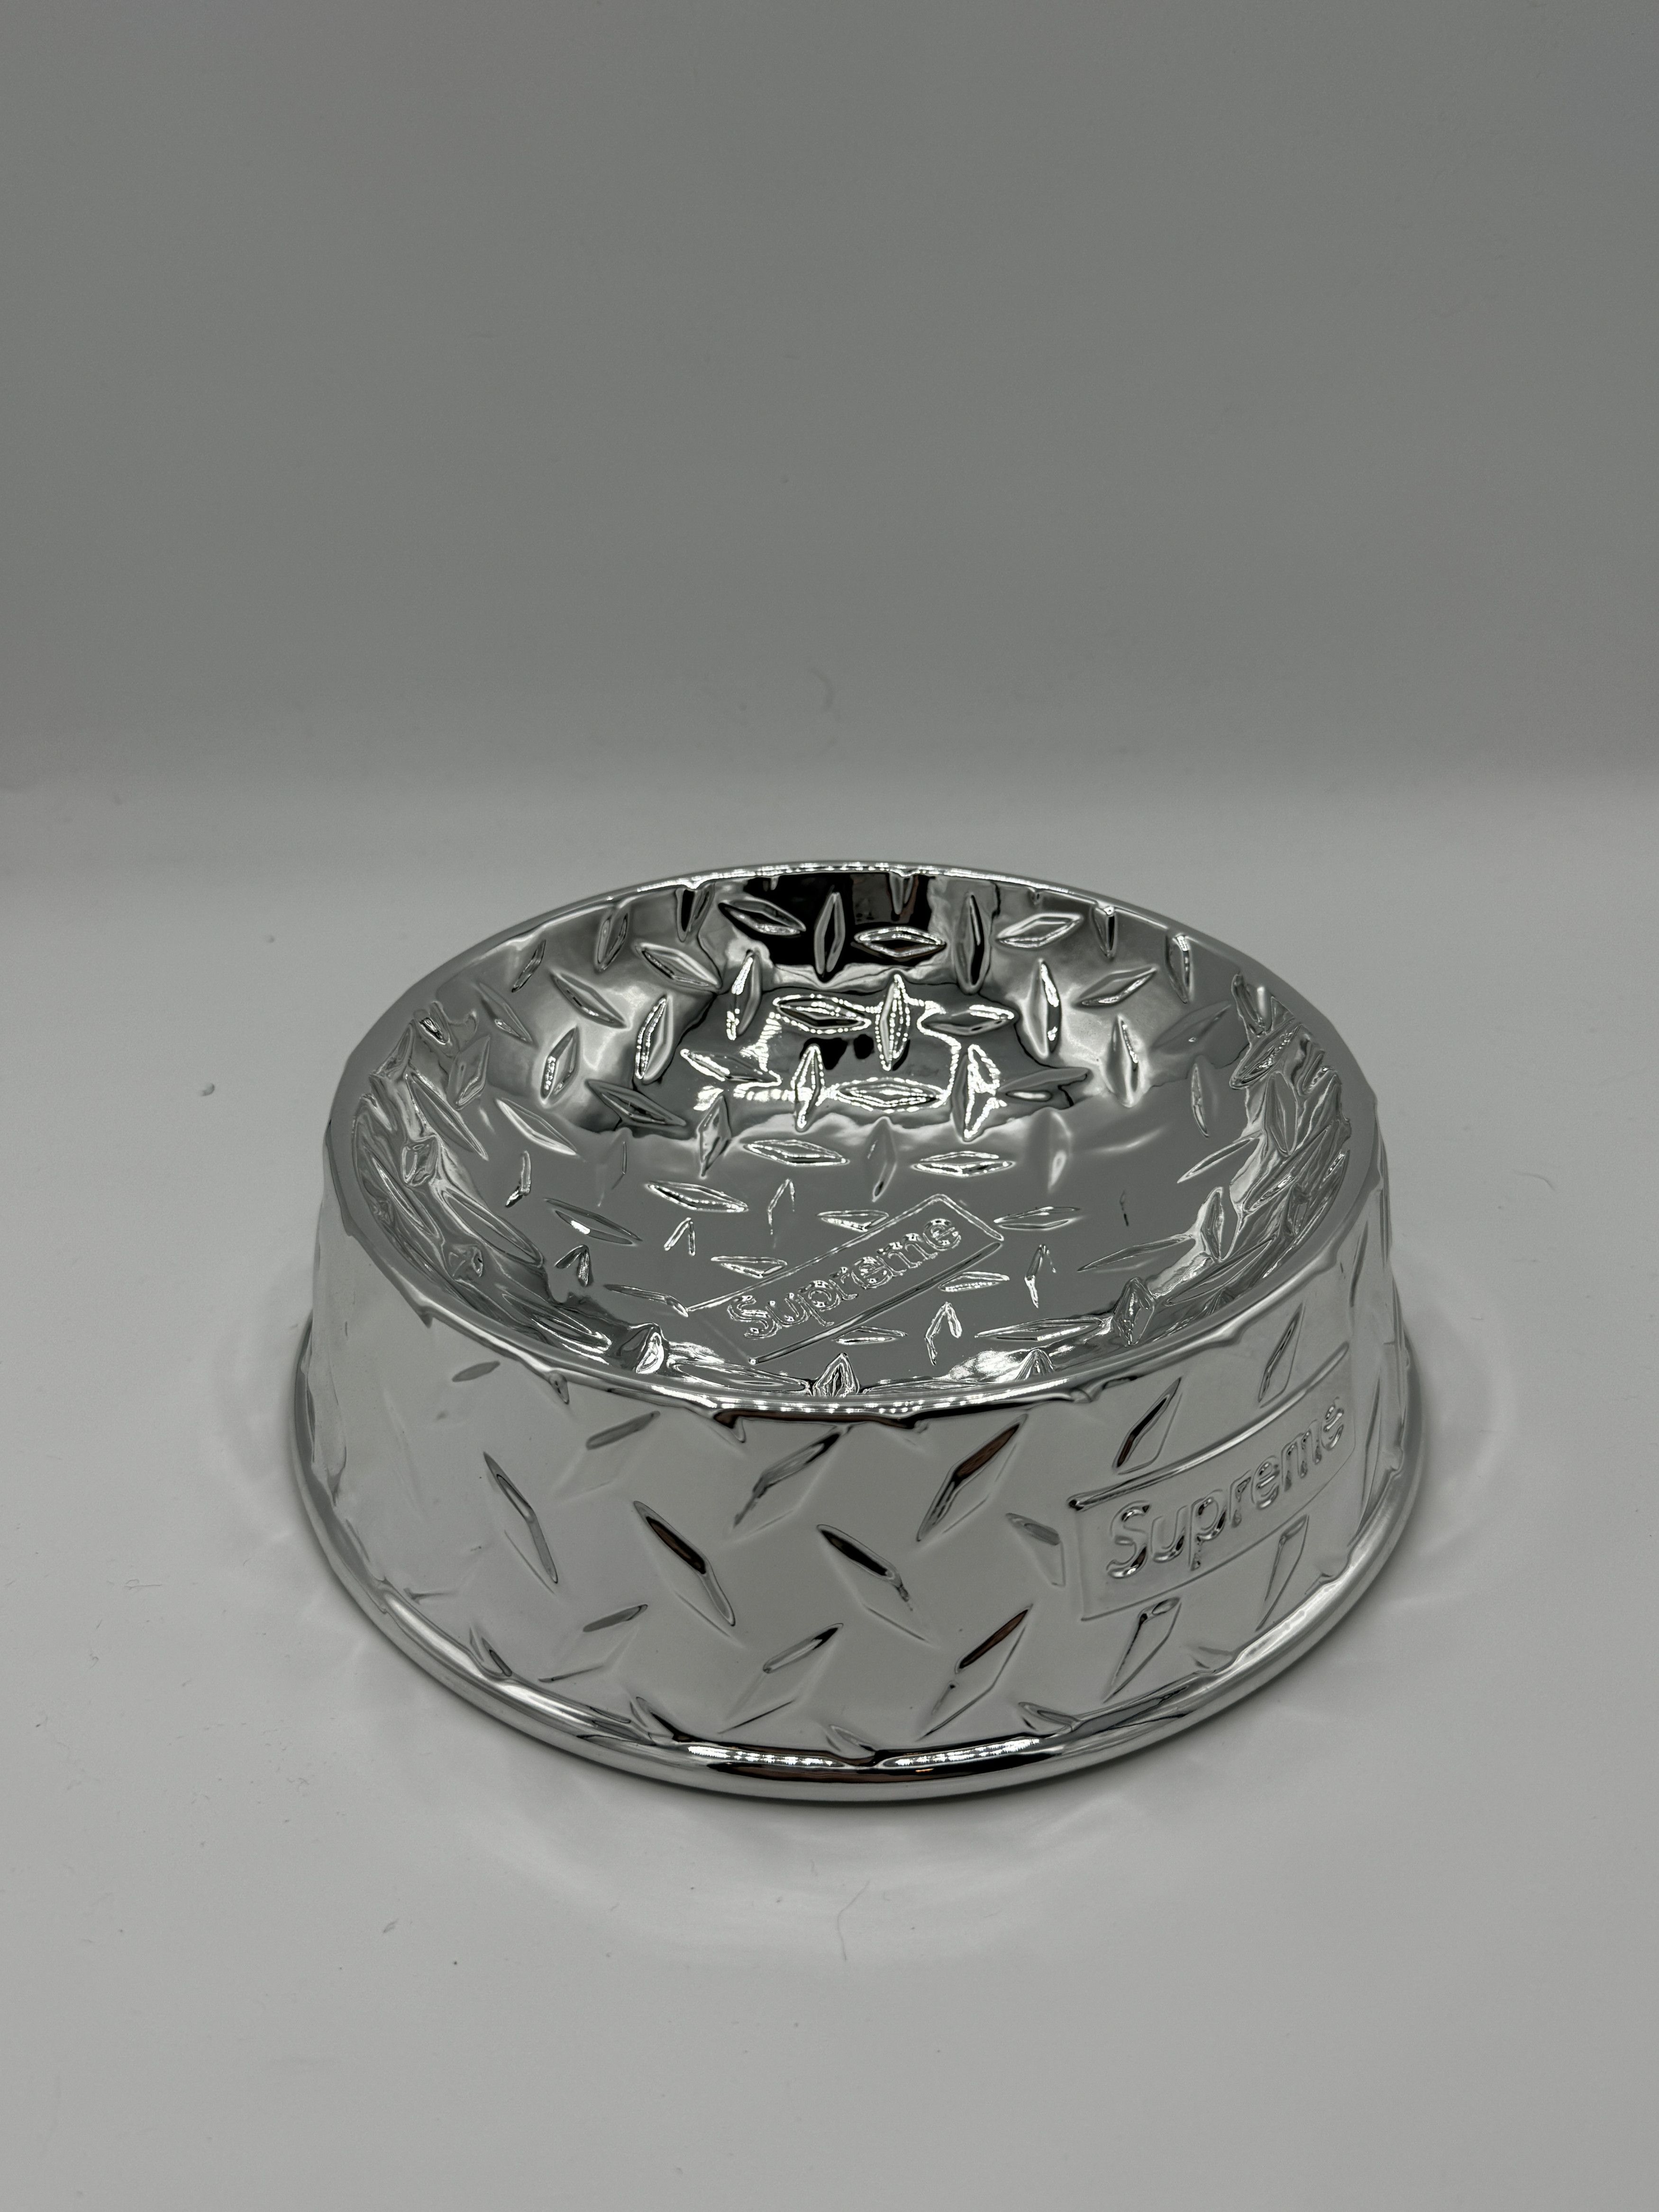 Supreme Supreme Diamond Plate Dog Bowl Silver Ceramic | Grailed